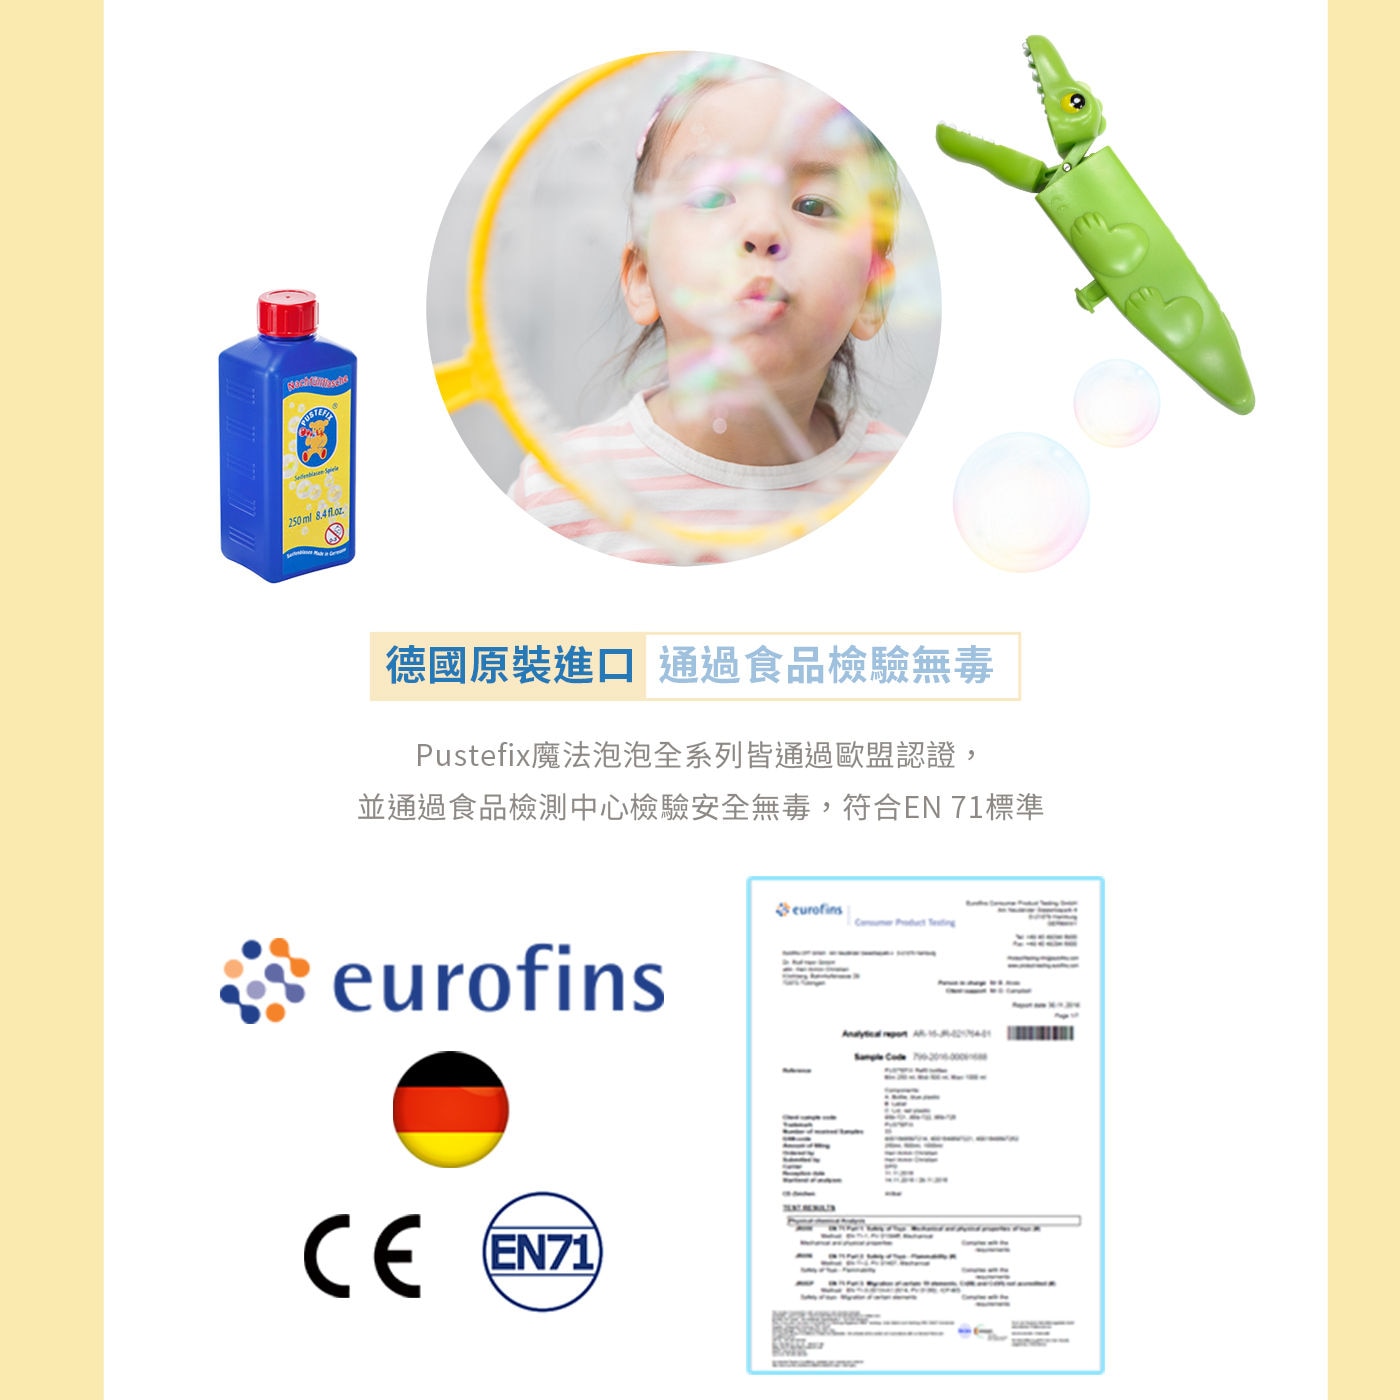 Pustefix 泡泡補充液 1000毫升 X 6入德國原裝進口通過食品檢驗無毒歐盟認證